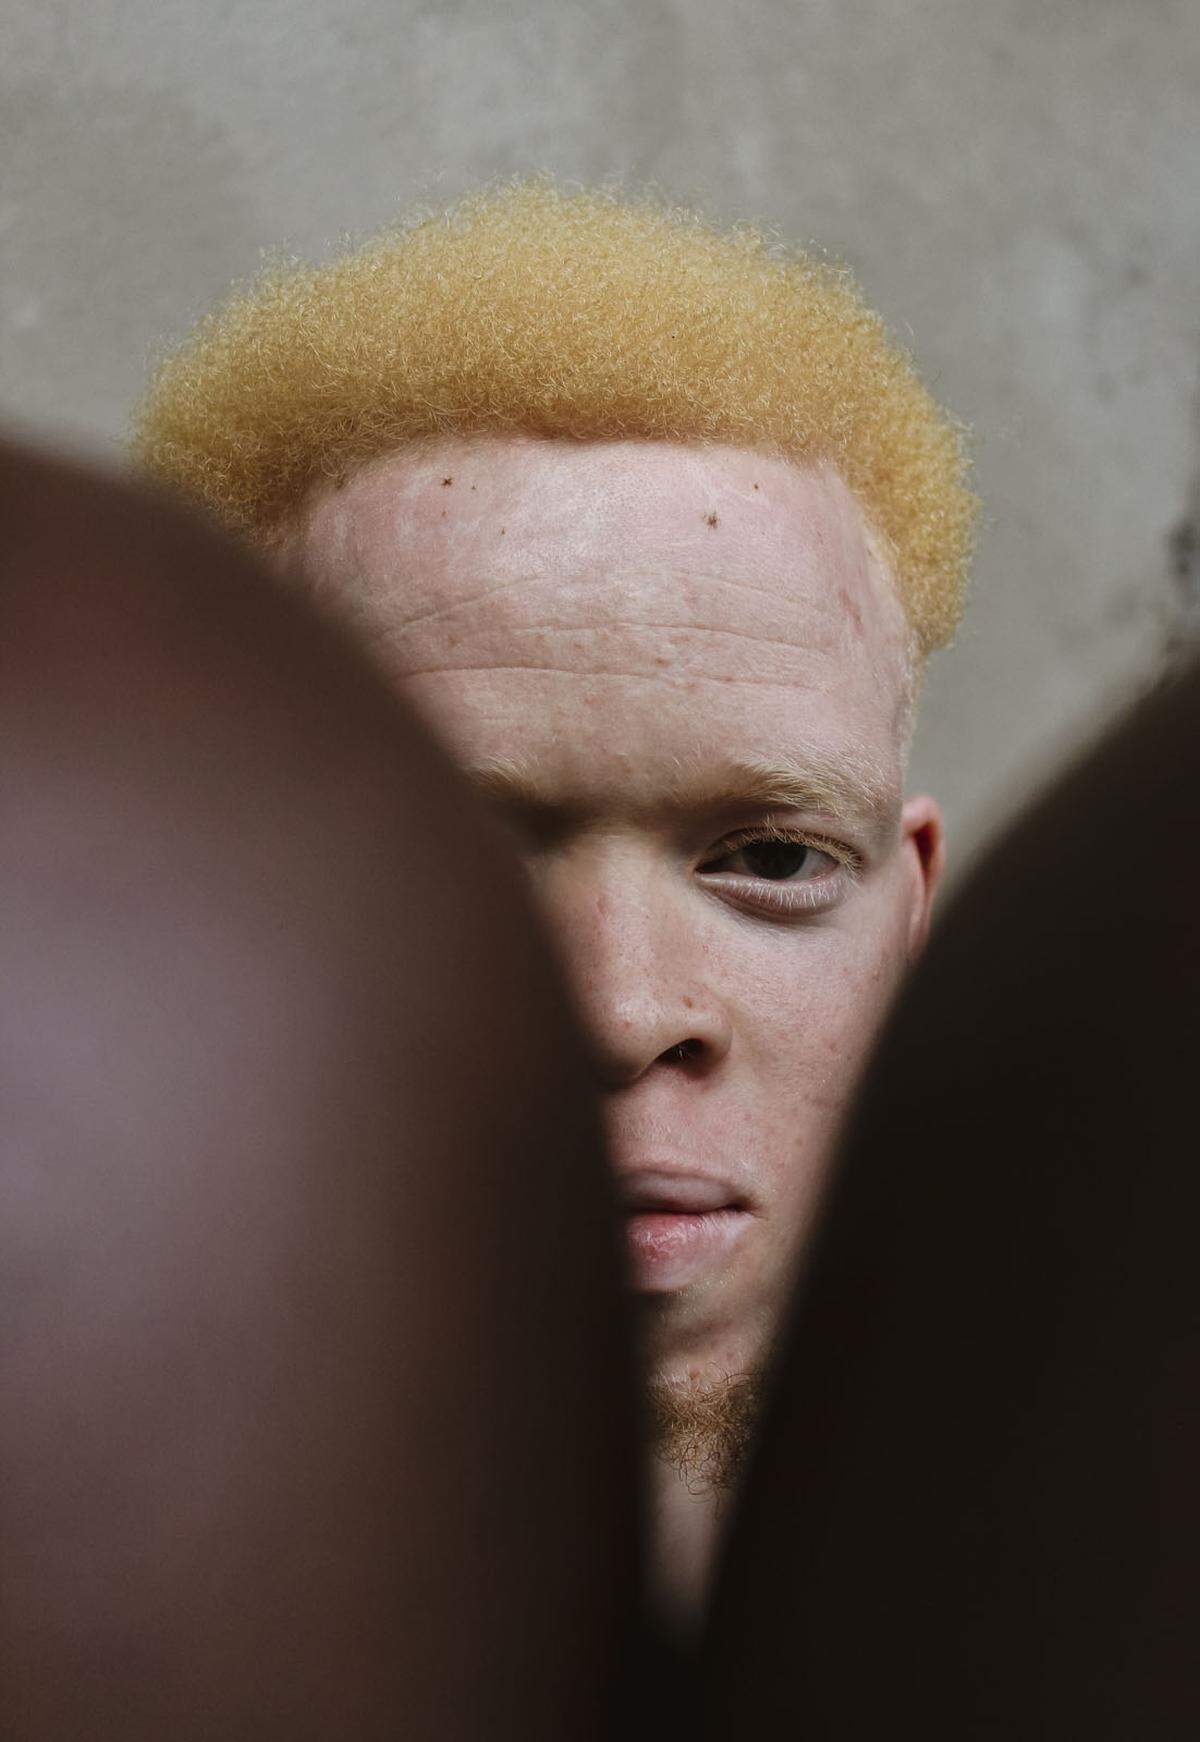 Ein User aus Kamerun reichte dieses Foto ein. Er erklärt: "Es zeigt einen Albino-Mann, der durch seinen direkten Blick zu verstehen gibt: 'Ich kann durch die dunklen Wände sehen, hinter denen ich mich befinde, lasse Blicke und Diskriminierung von mir abprallen. Ich stehe zu meiner Schönheit und akzeptiere mich, wie ich bin.'"    